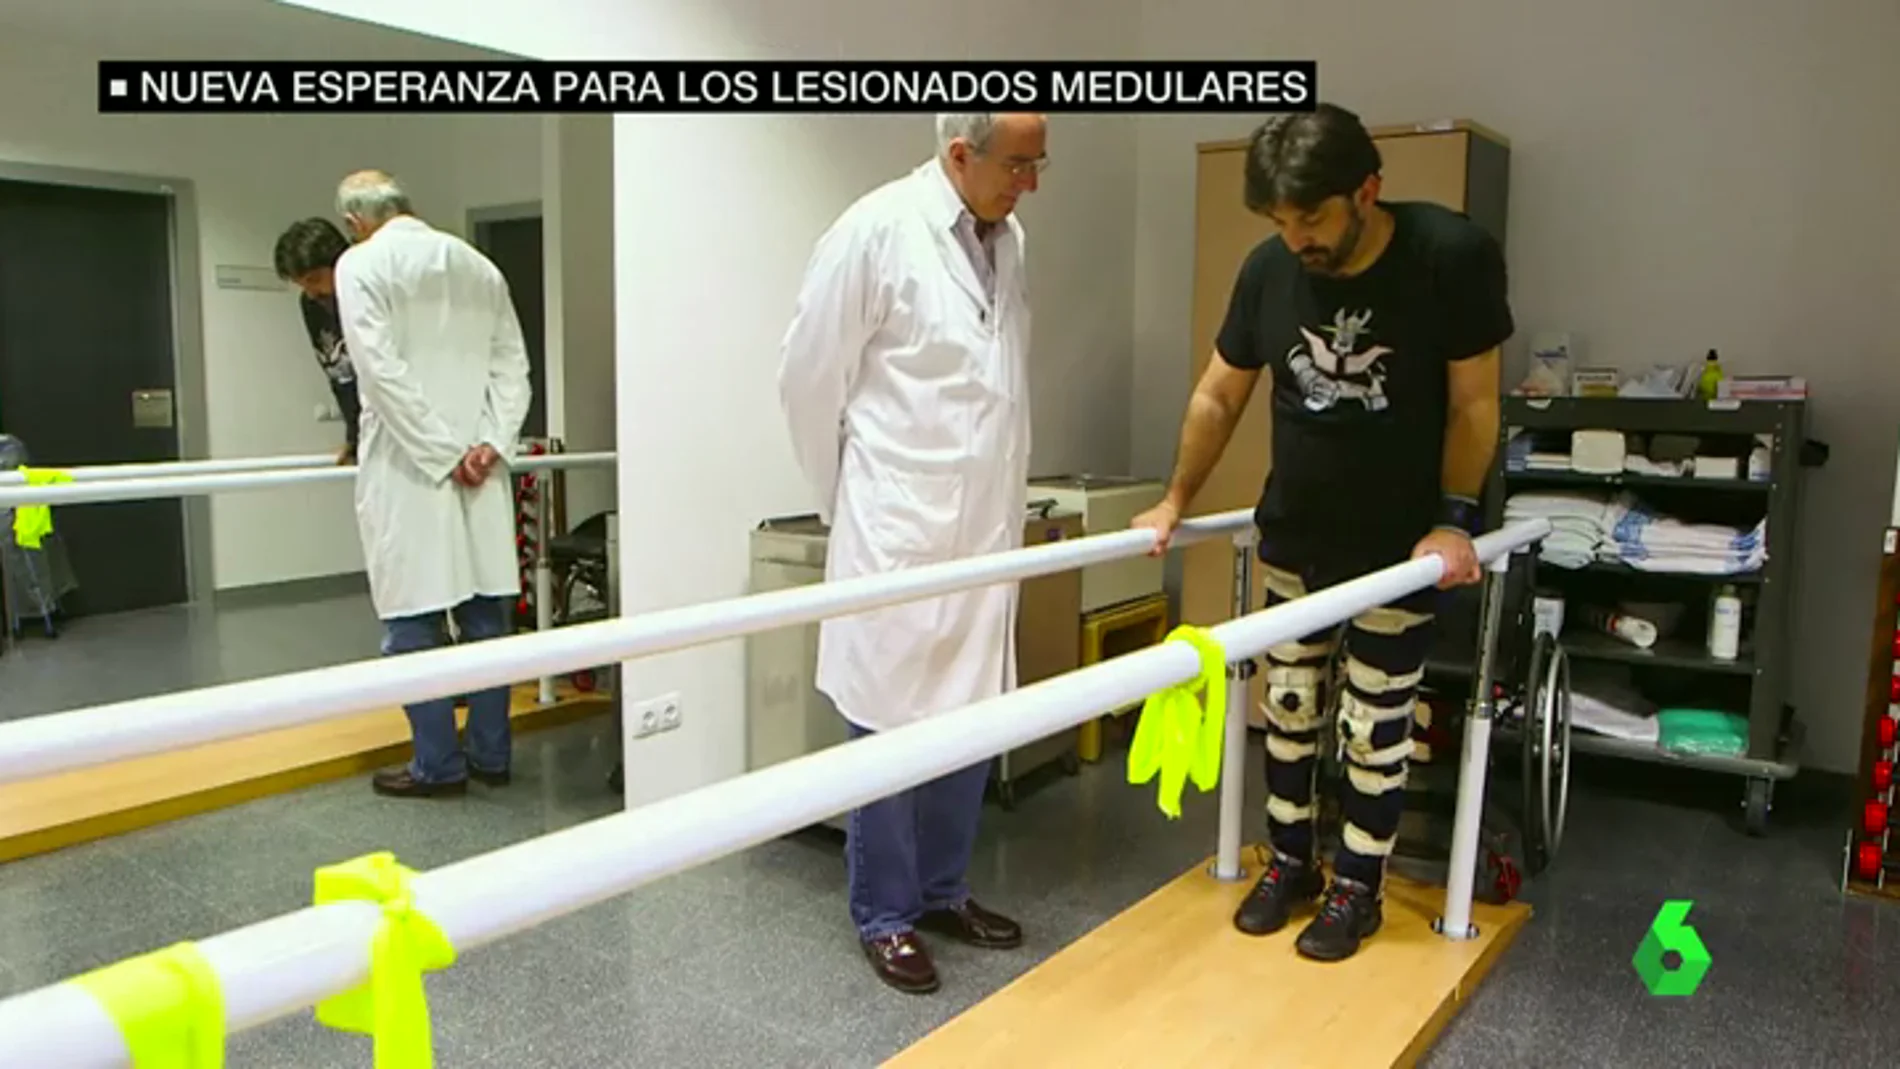 Frame 37.727286 de: Esperanza para enfermos medulares: un hospital de Madrid logra que pacientes con tetraplejia crónica recuperen sensibilidad y anden 